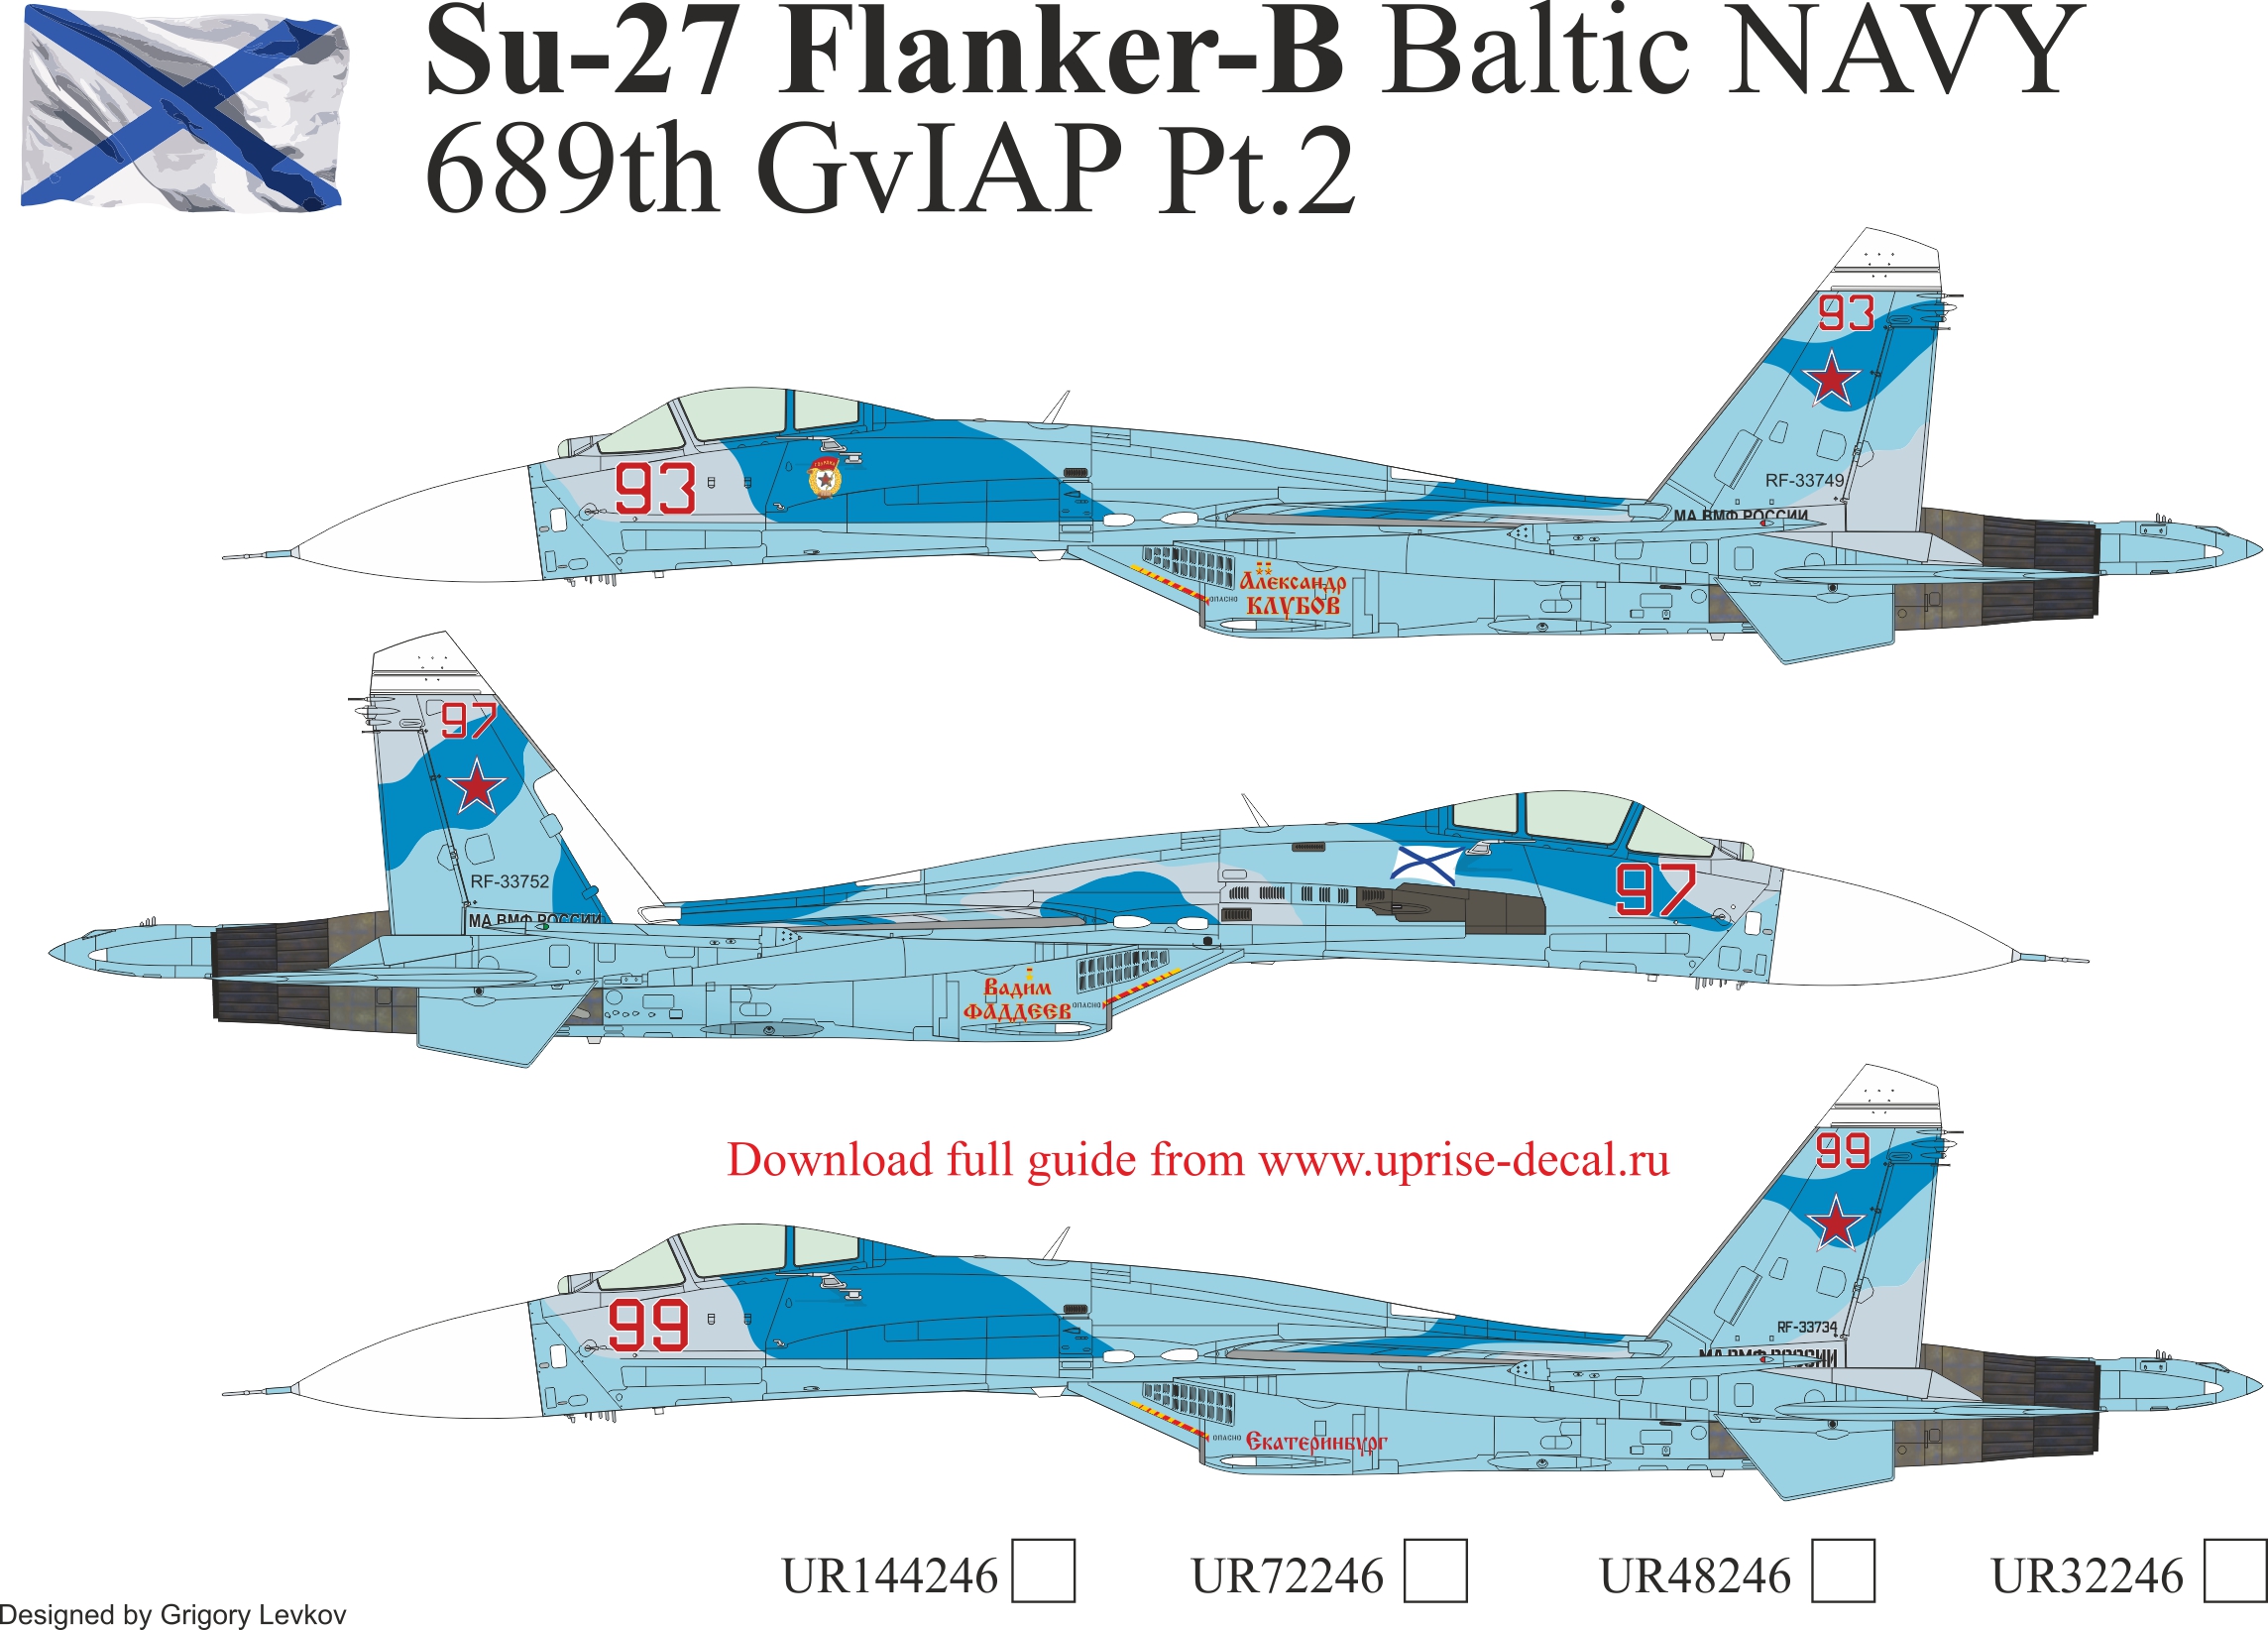 UR32246  декали  Su-27 Flanker-B Baltic NAVY 689th GvIAP Pt.2, without stencils  (1:32)